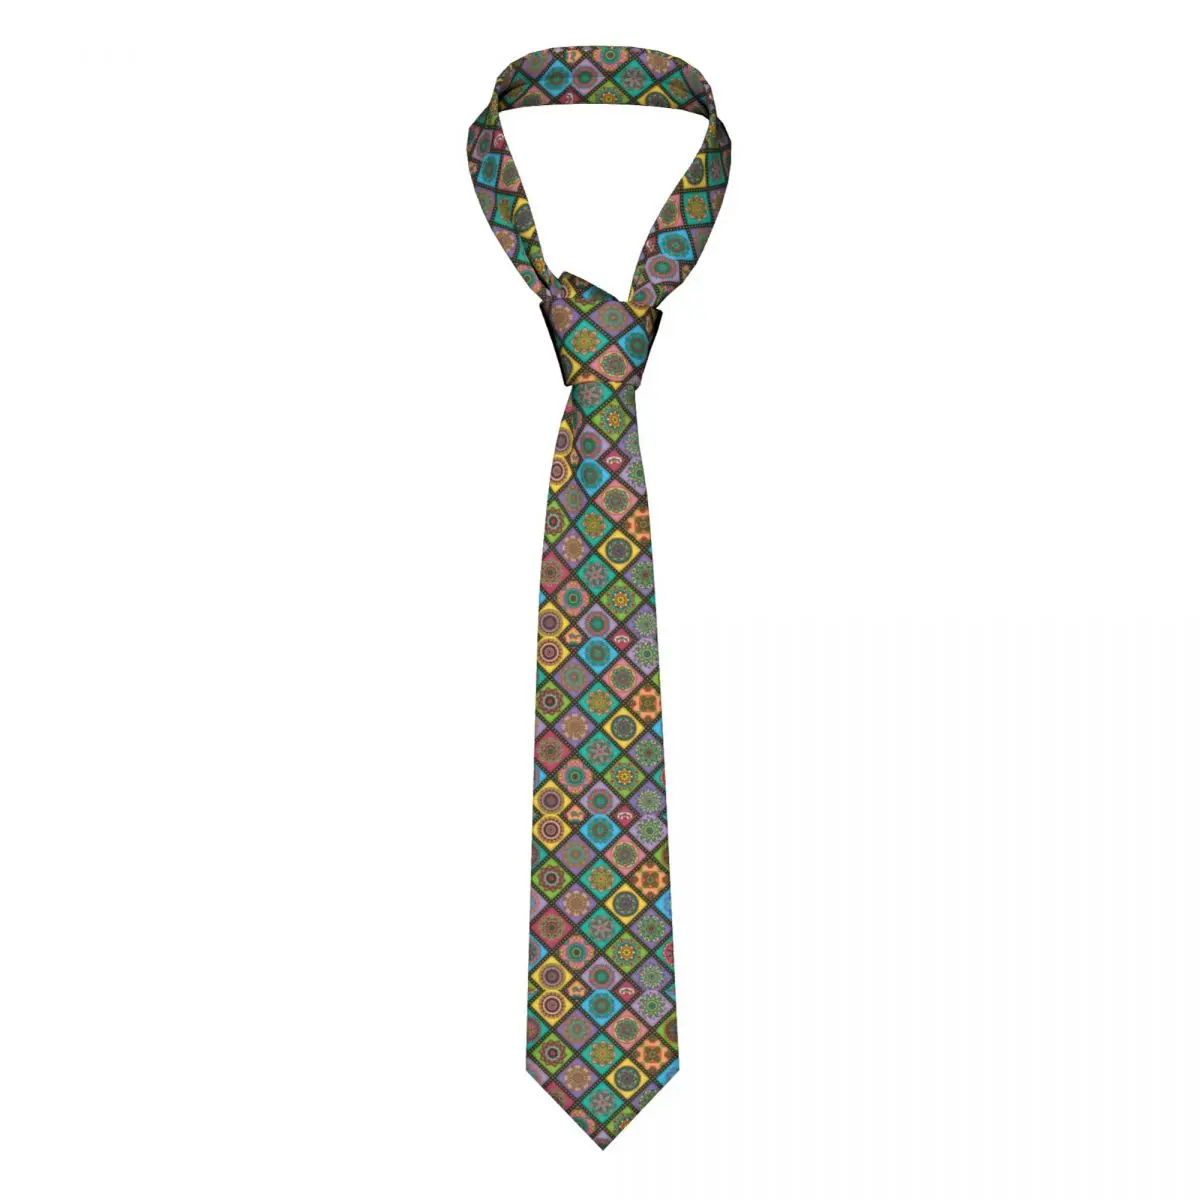 

Ретро галстук с мандалой, цветной принт, деловой галстук из полиэстера и шелка, галстук для мужчин, Подарочная блузка, модный галстук